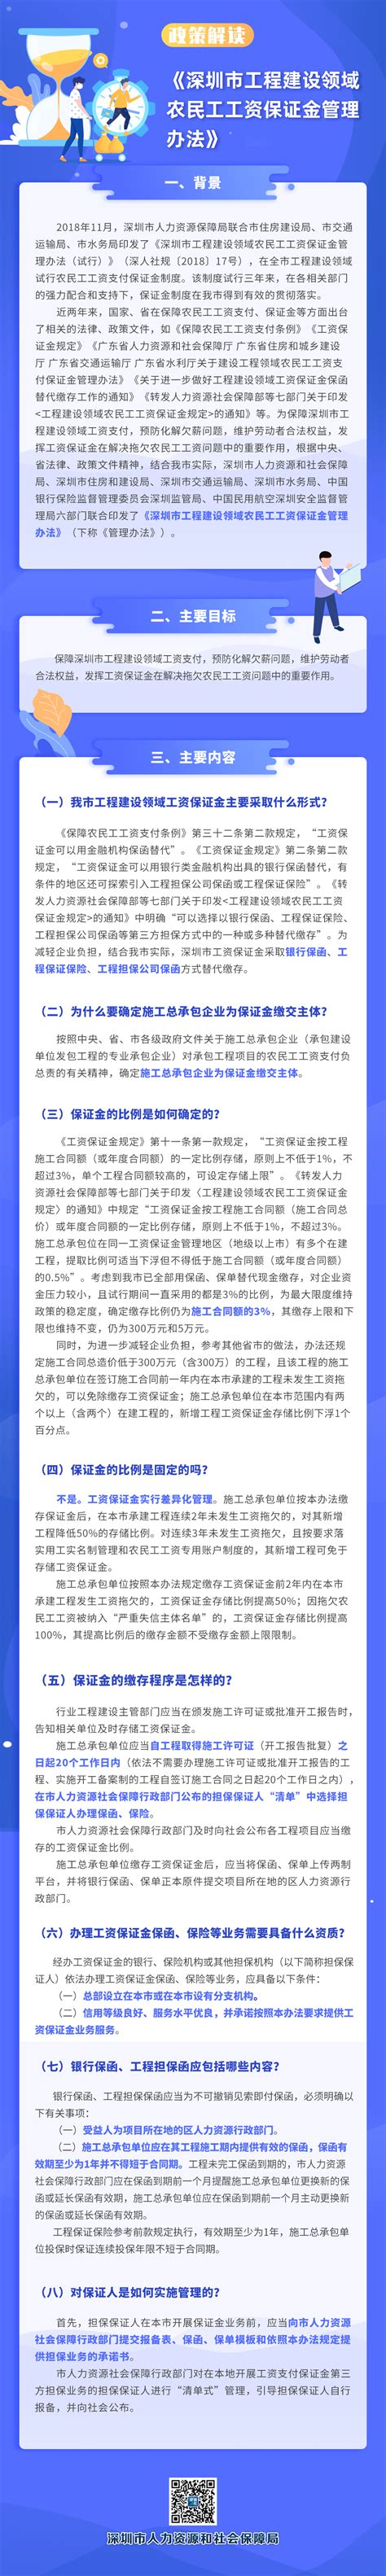 《深圳市工程建设领域农民工工资保证金管理办法》解读